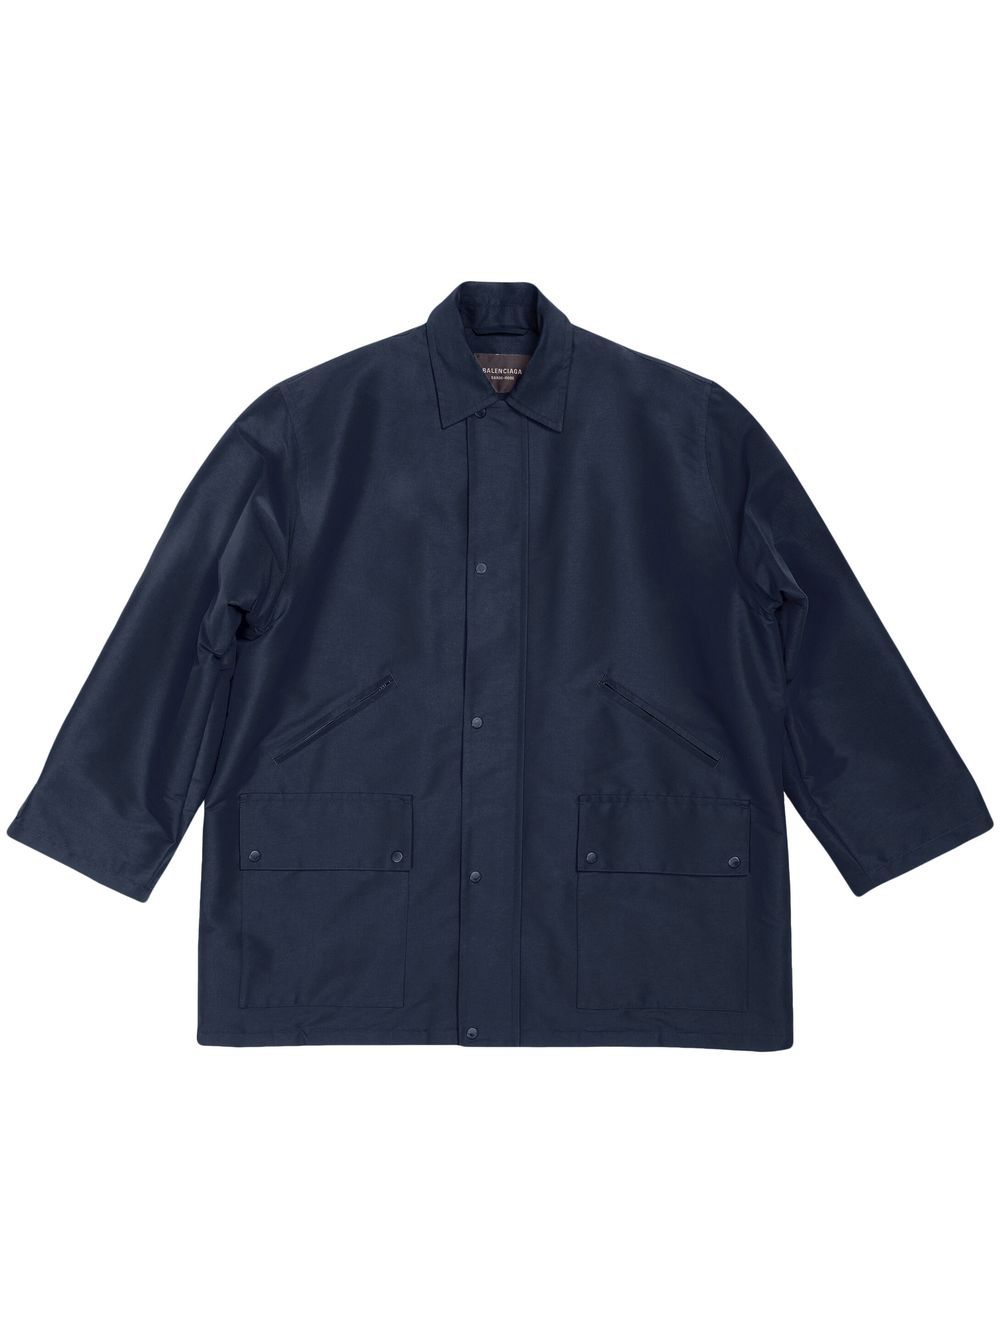 Balenciaga Button-up Parka Jacket In Navy